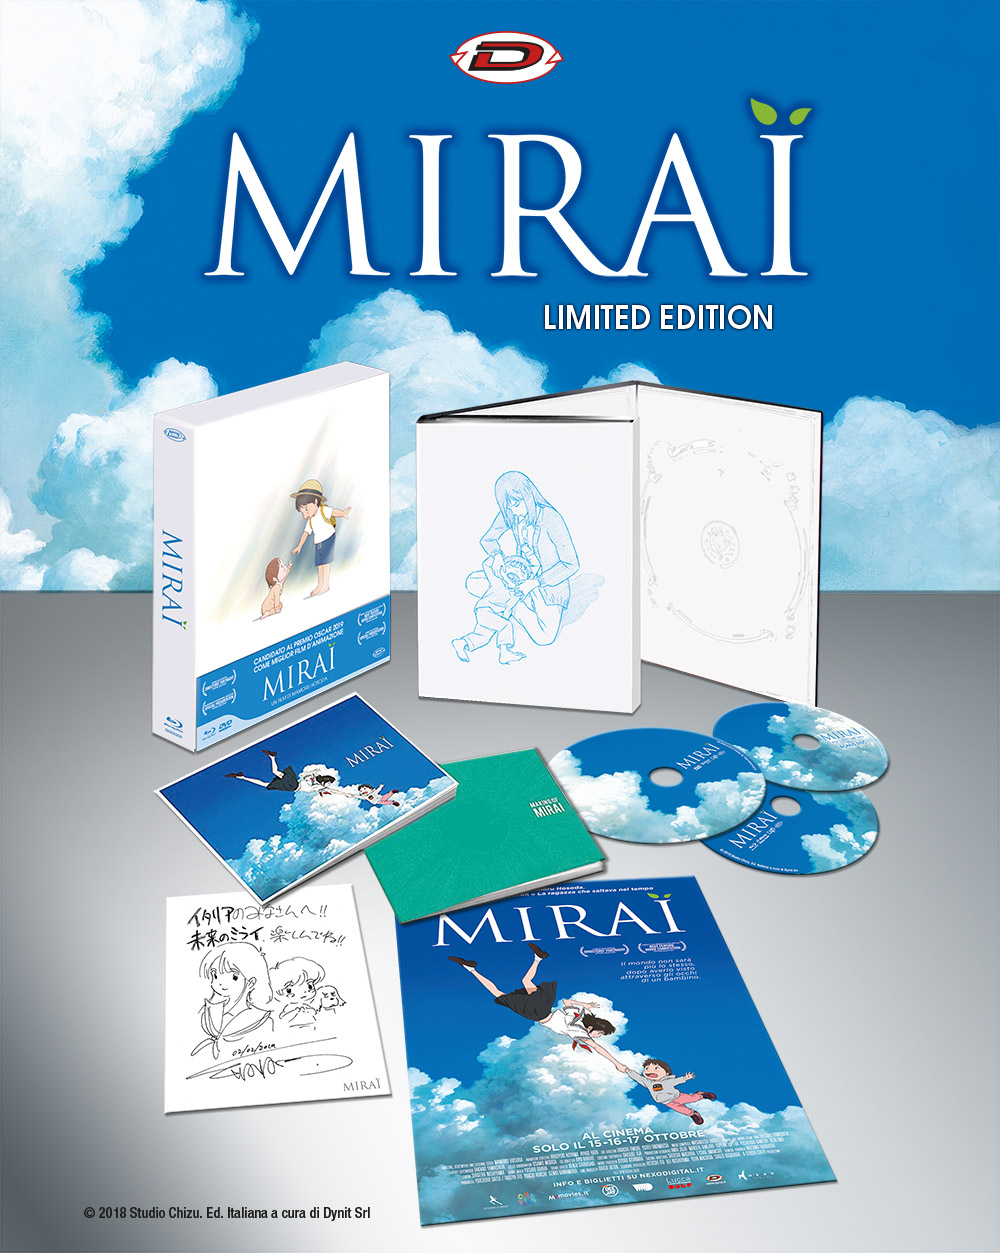 Blu-Ray Mirai (Limited Edition Digipack Box) (2 Blu-Ray+Dvd+2 Booklet+Card+Poster) NUOVO SIGILLATO, EDIZIONE DEL 24/04/2019 SUBITO DISPONIBILE